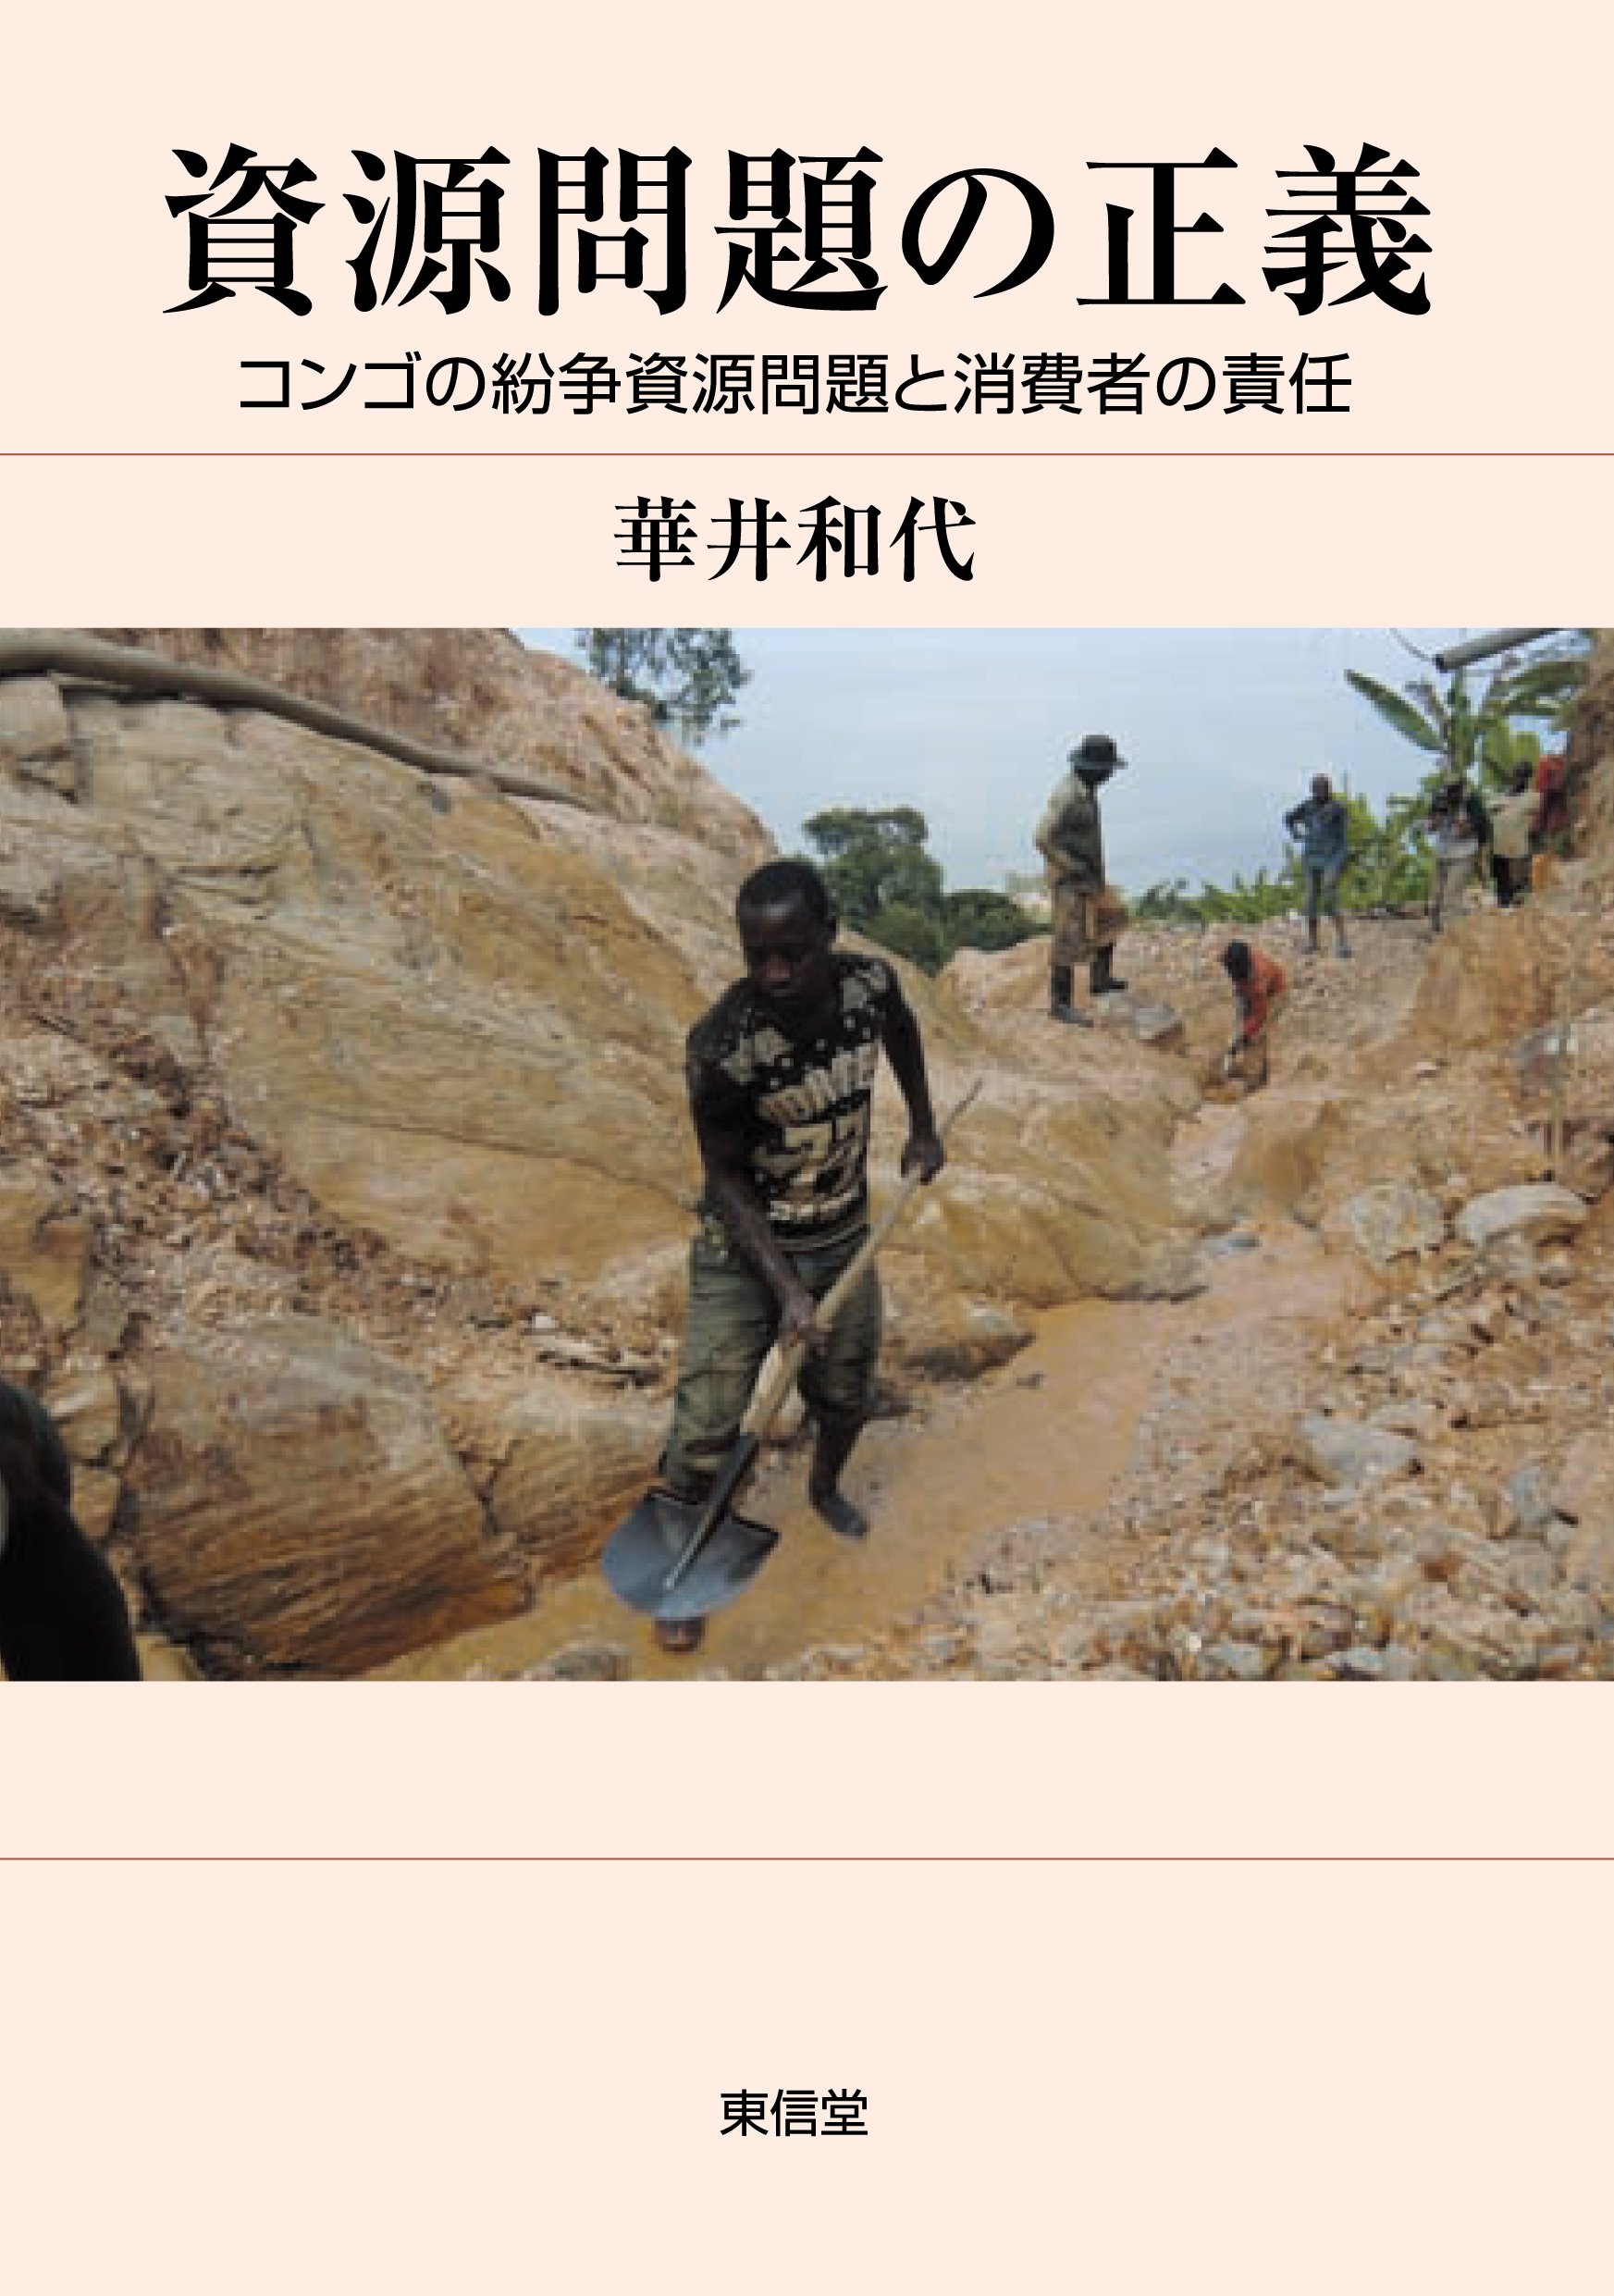 薄ピンクの表紙にコンゴ人たちの労働作業写真